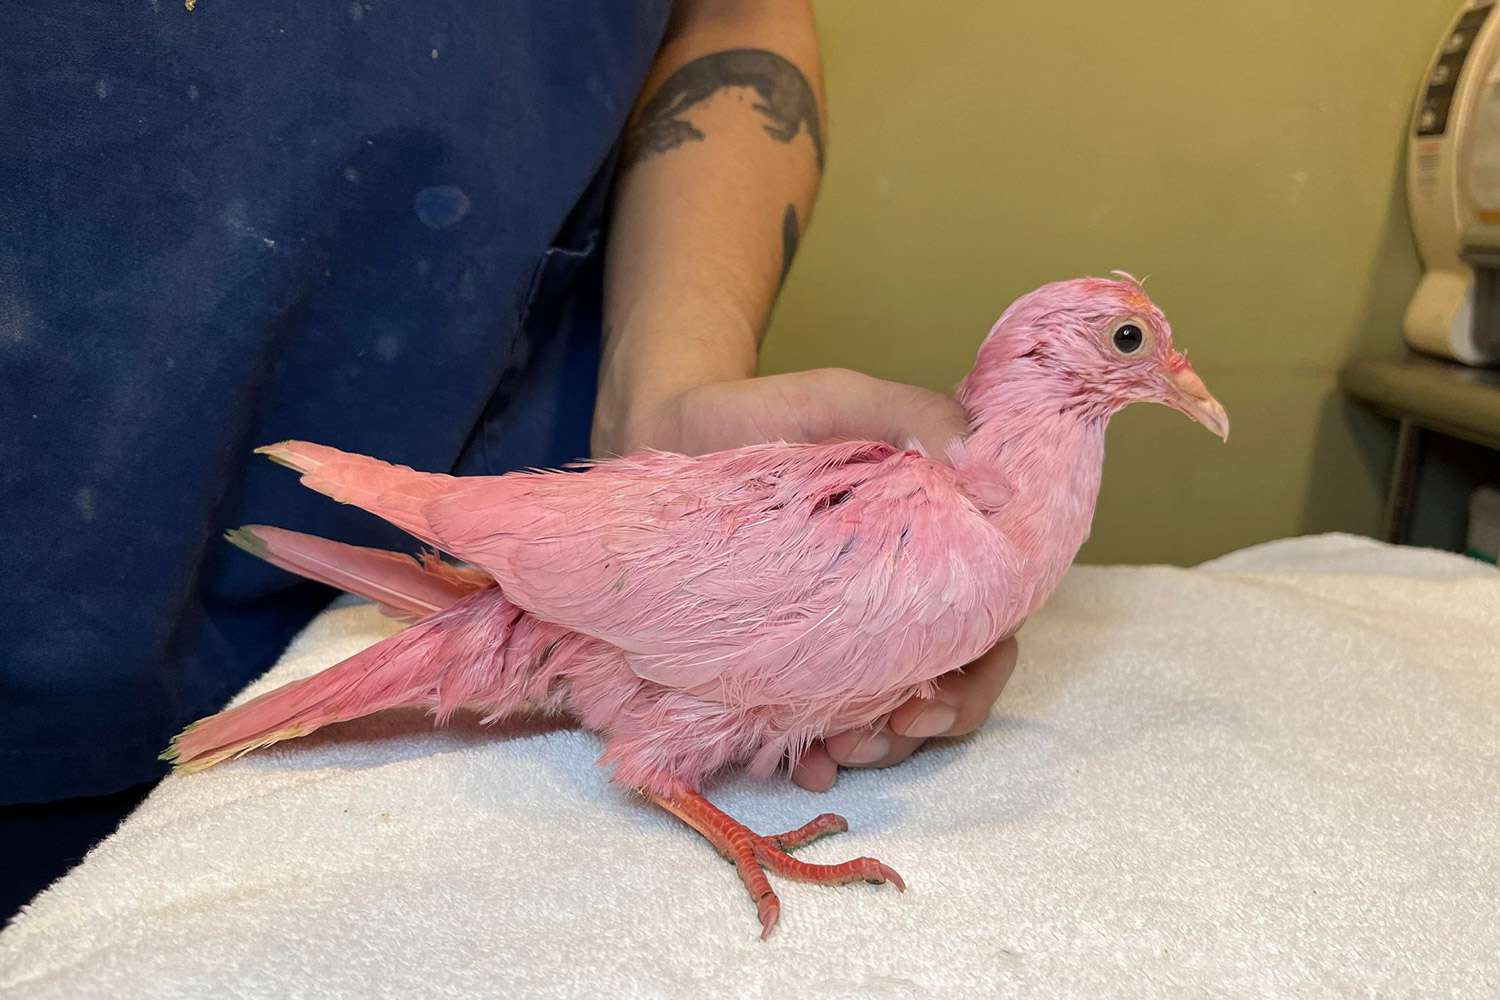 Animal Rescue warnt: „Färbe niemals einen Vogel“, nachdem eine „kämpfende“ rosa Taube in New York gefunden wurde